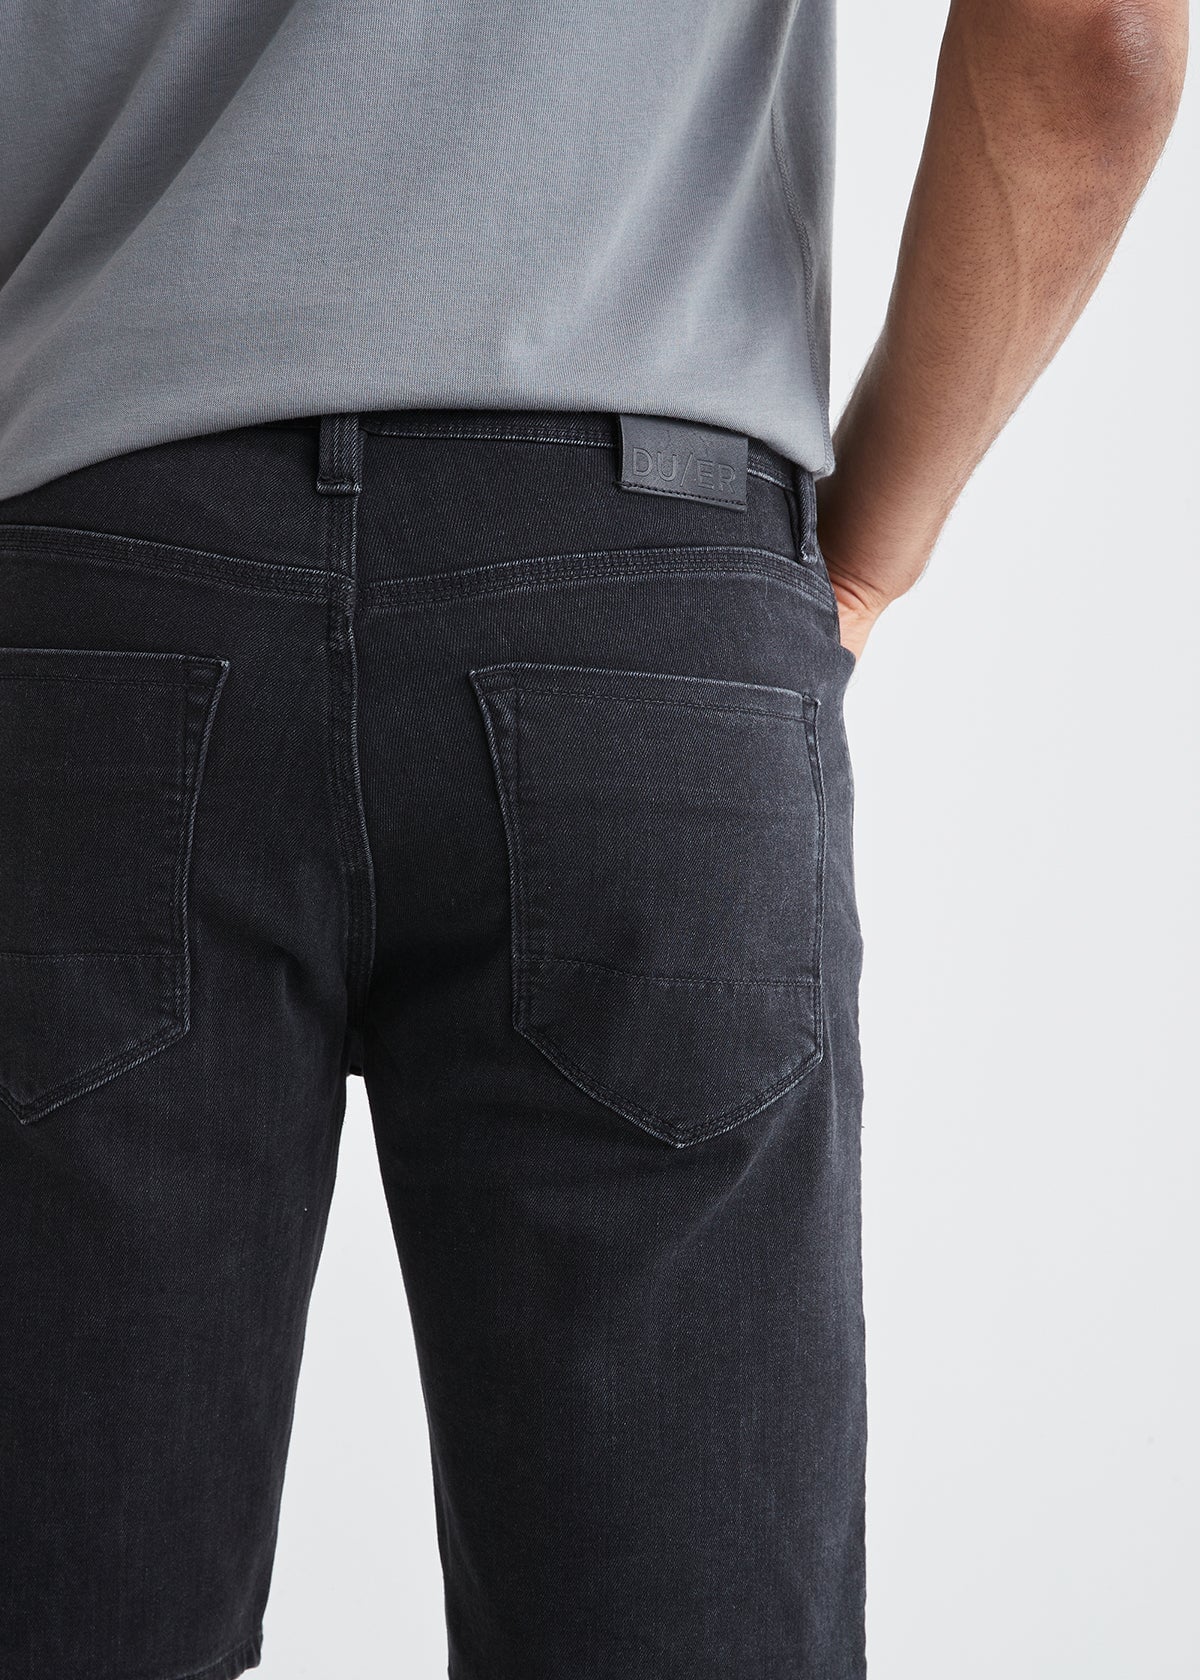 mens black performance denim stretch short back pocket detail